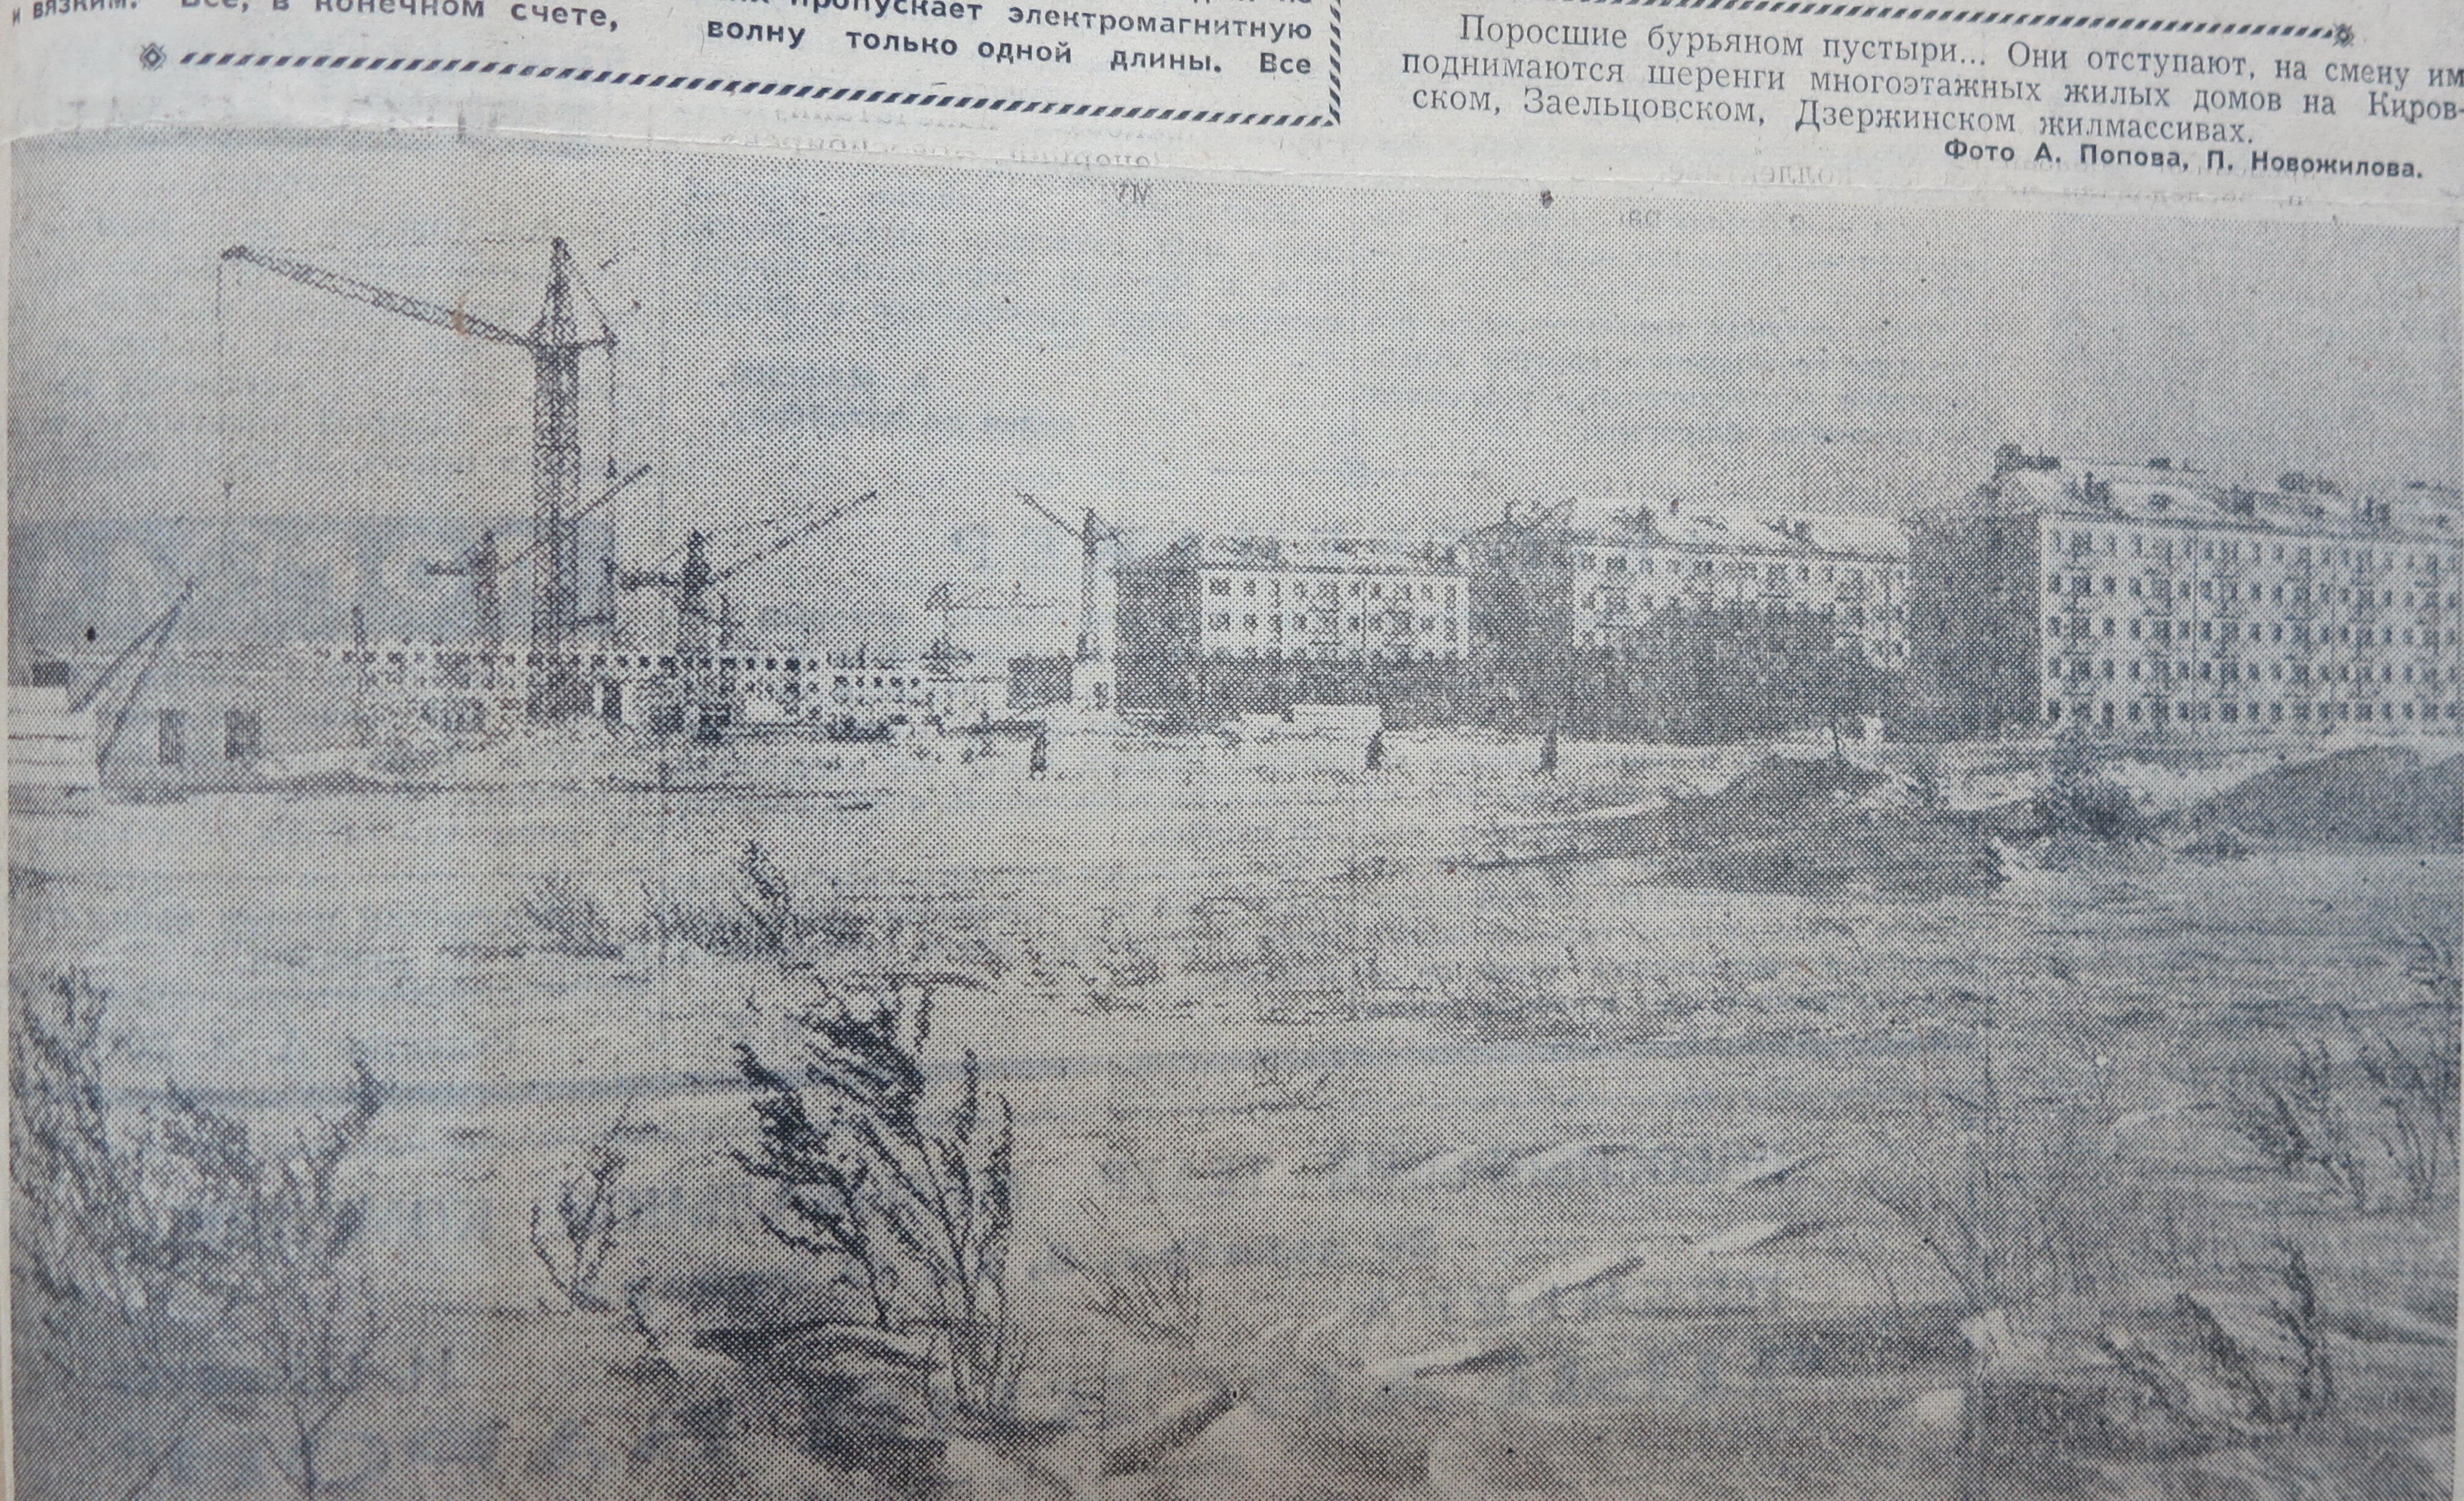 1961 12 30 ВН Снято со стороны Блюхера-Геодезическая.